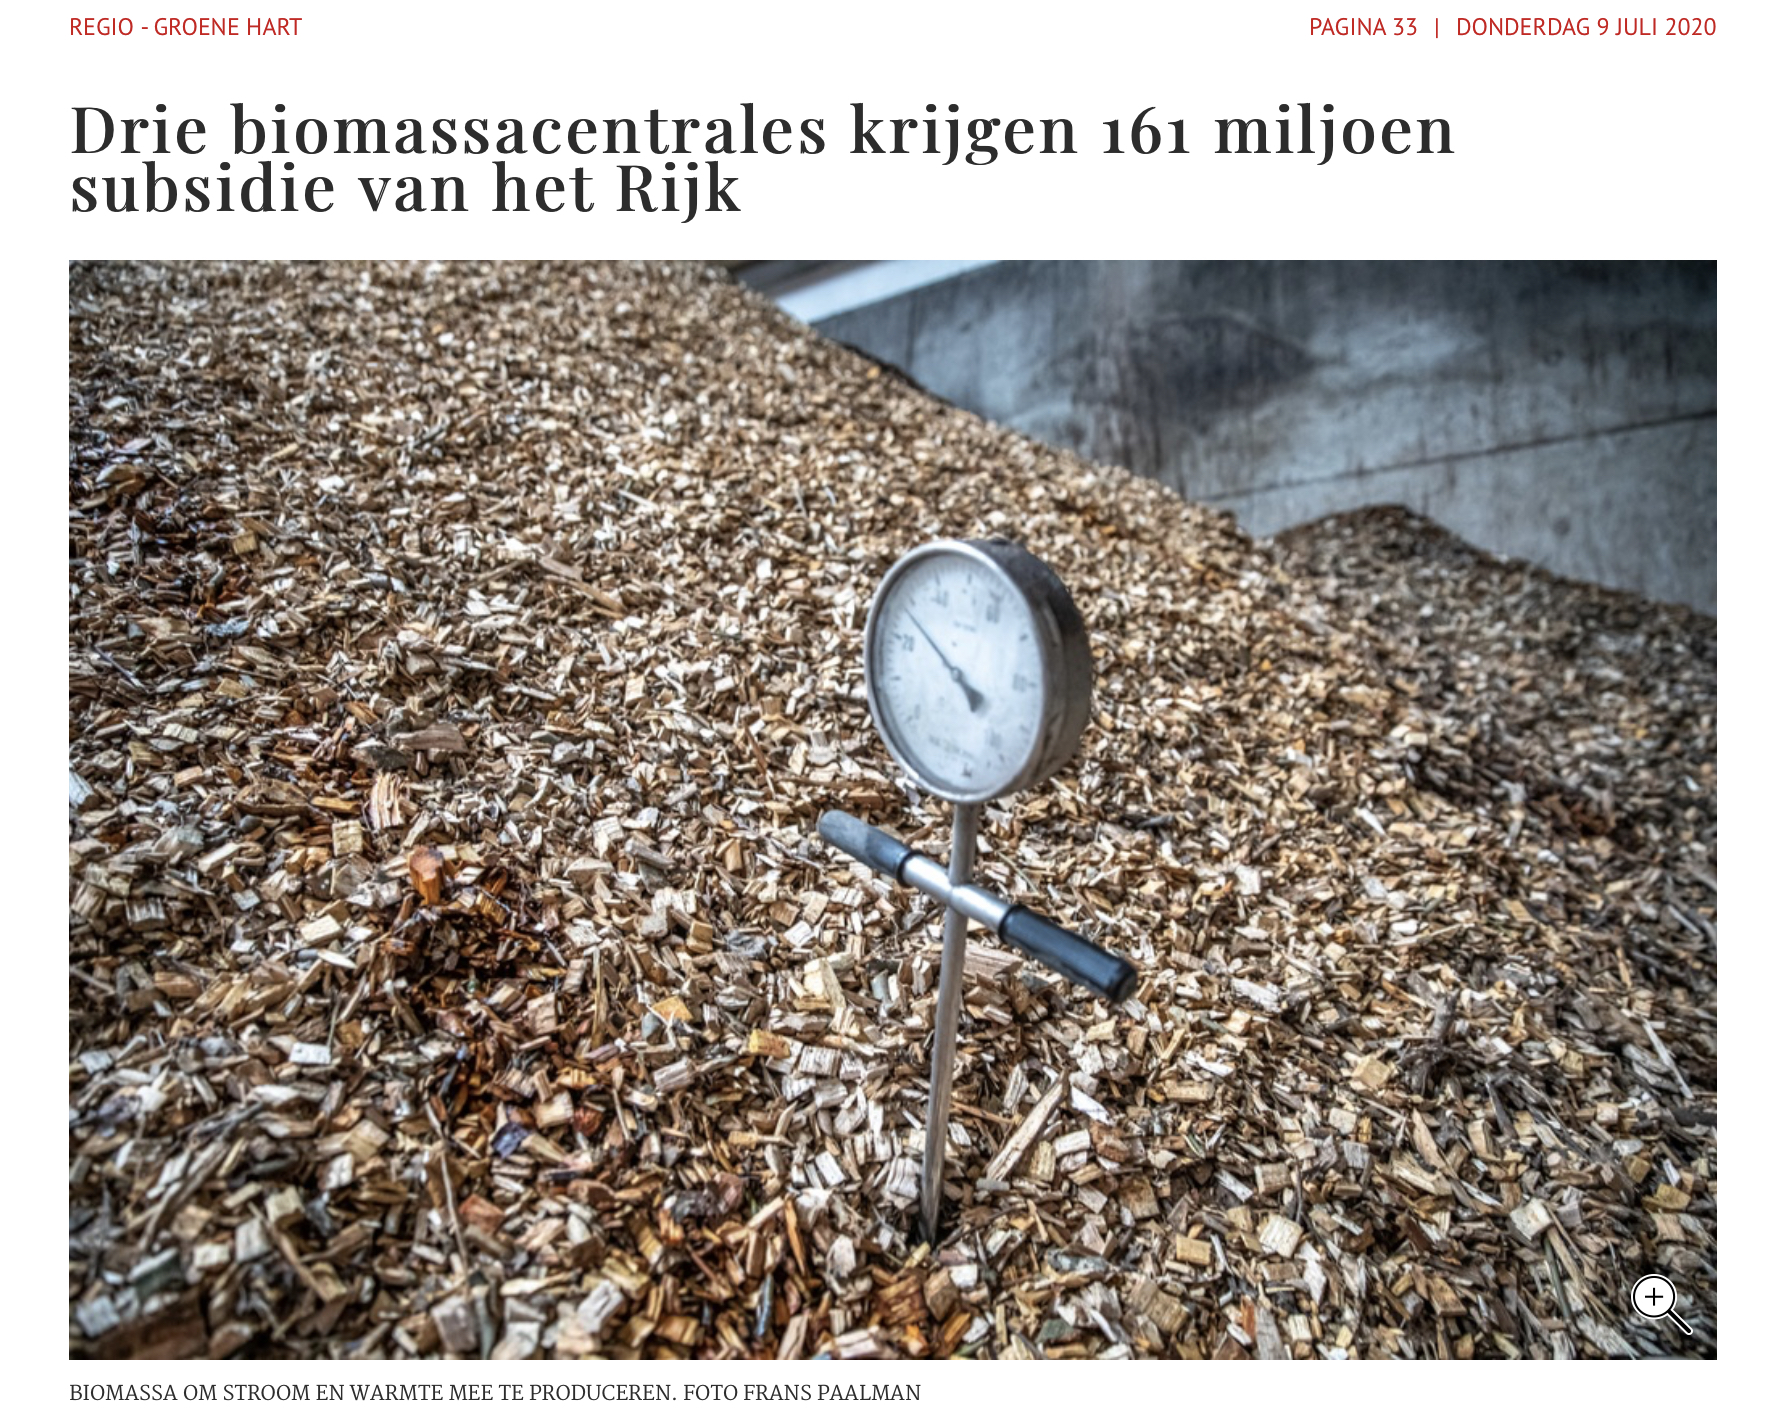 Drie biomassacentrales krijgen 161 miljoen subsidie van het Rijk